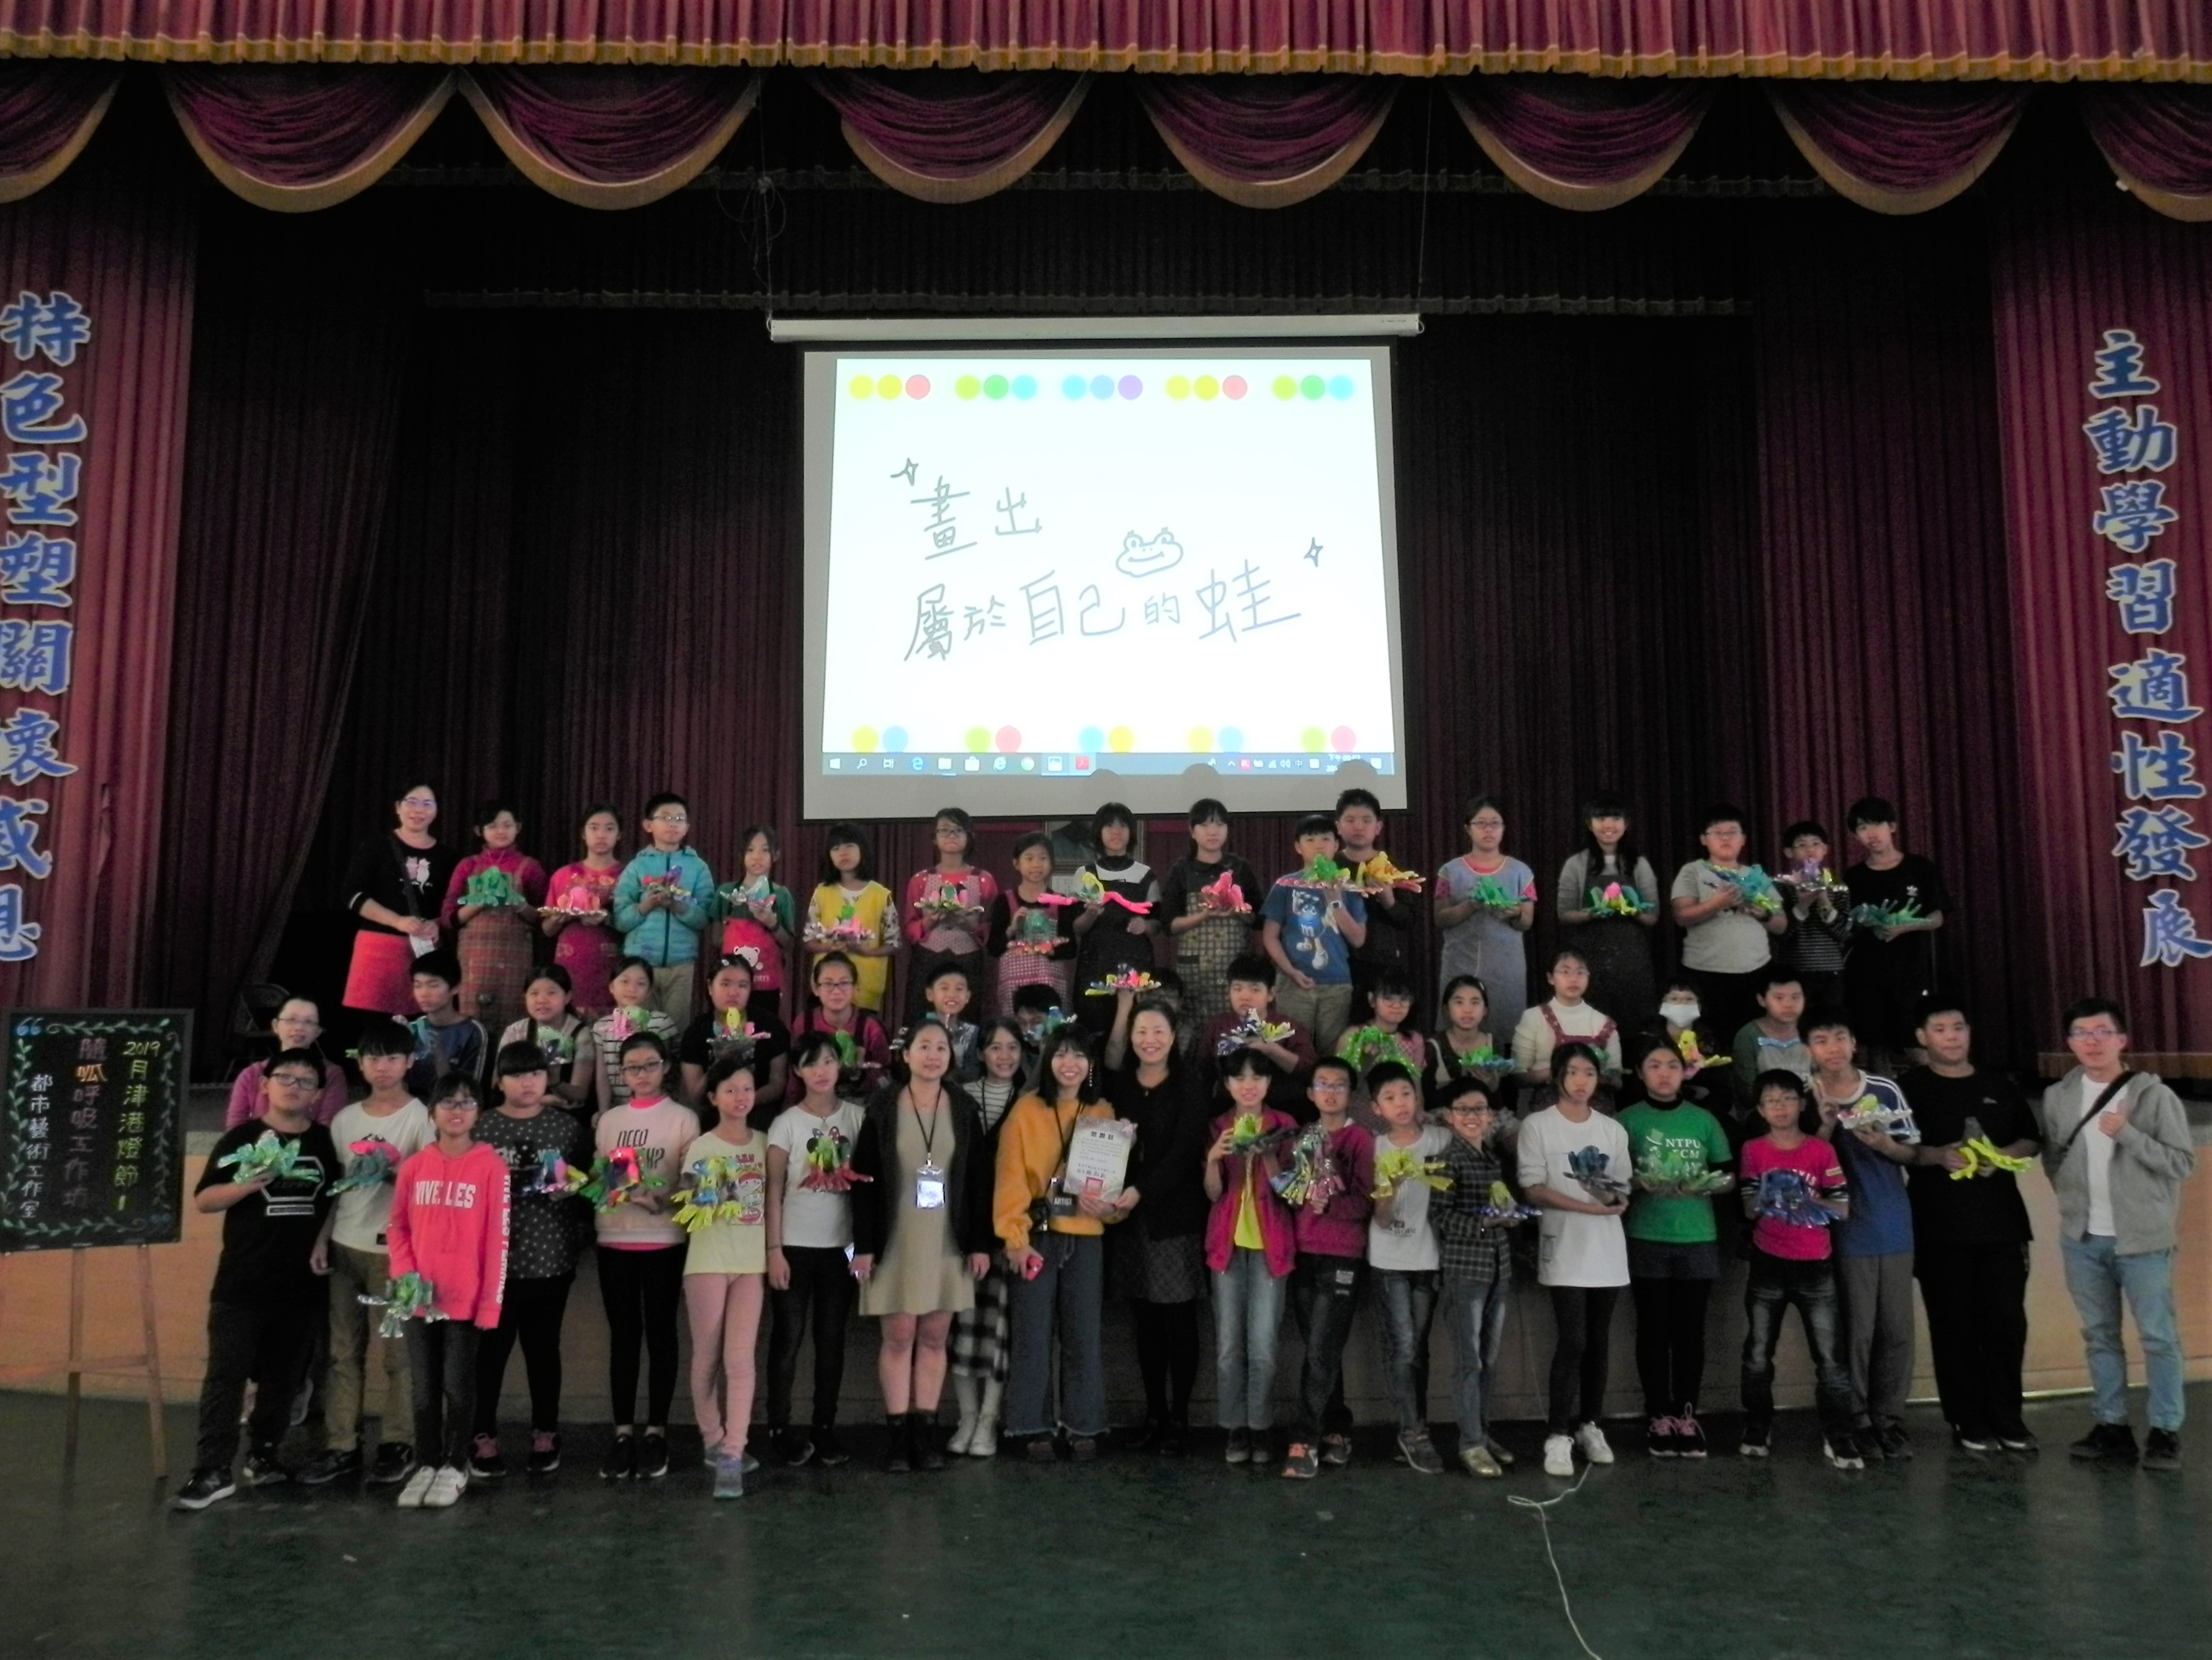 月津國小學生配合2019月津港燈節創作隨光呼吸的蛙鳴造型